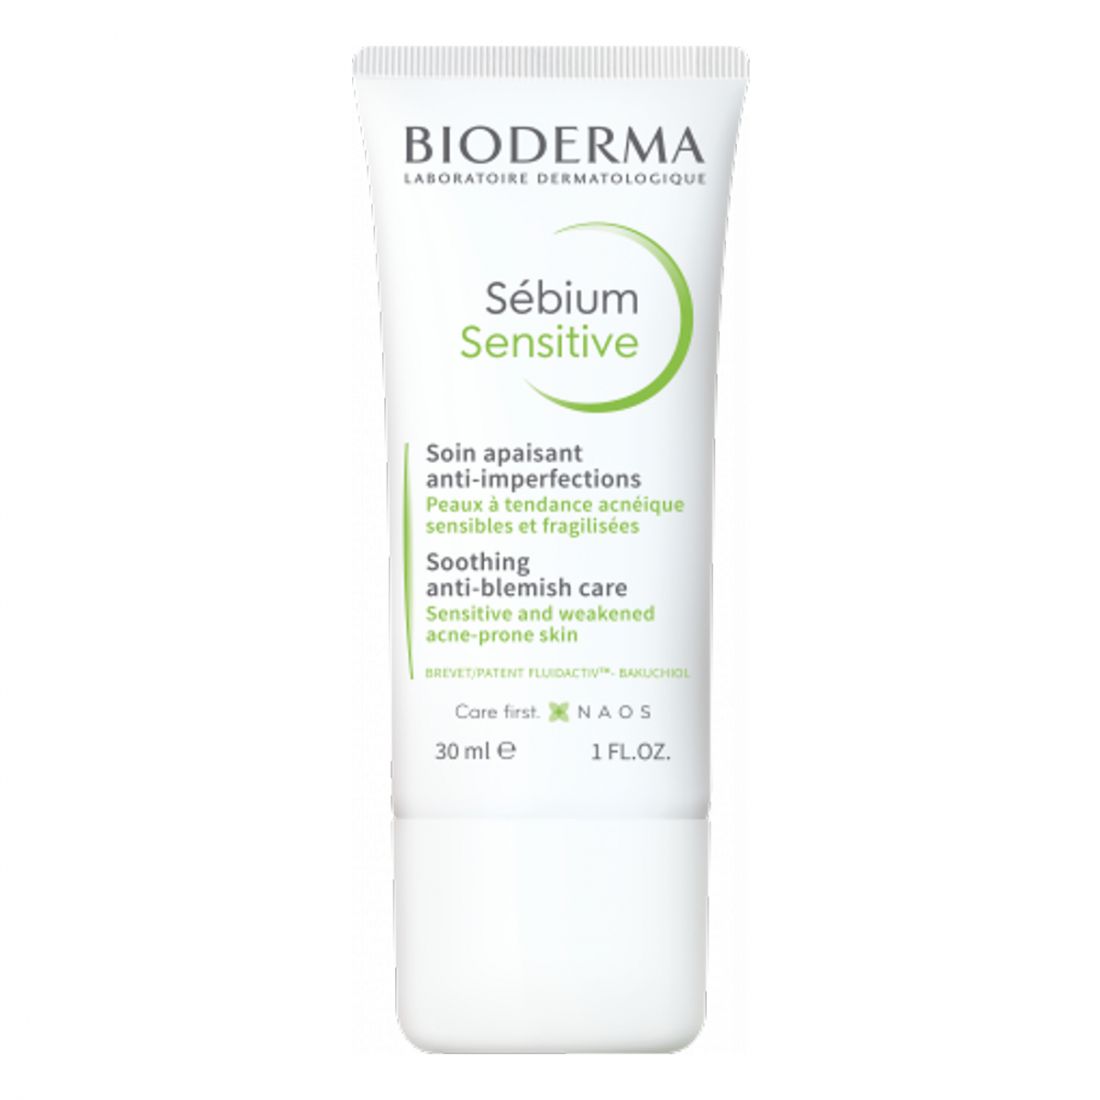 Bioderma - Traitement des imperfections 'Sébium Sensitive' - 30 ml